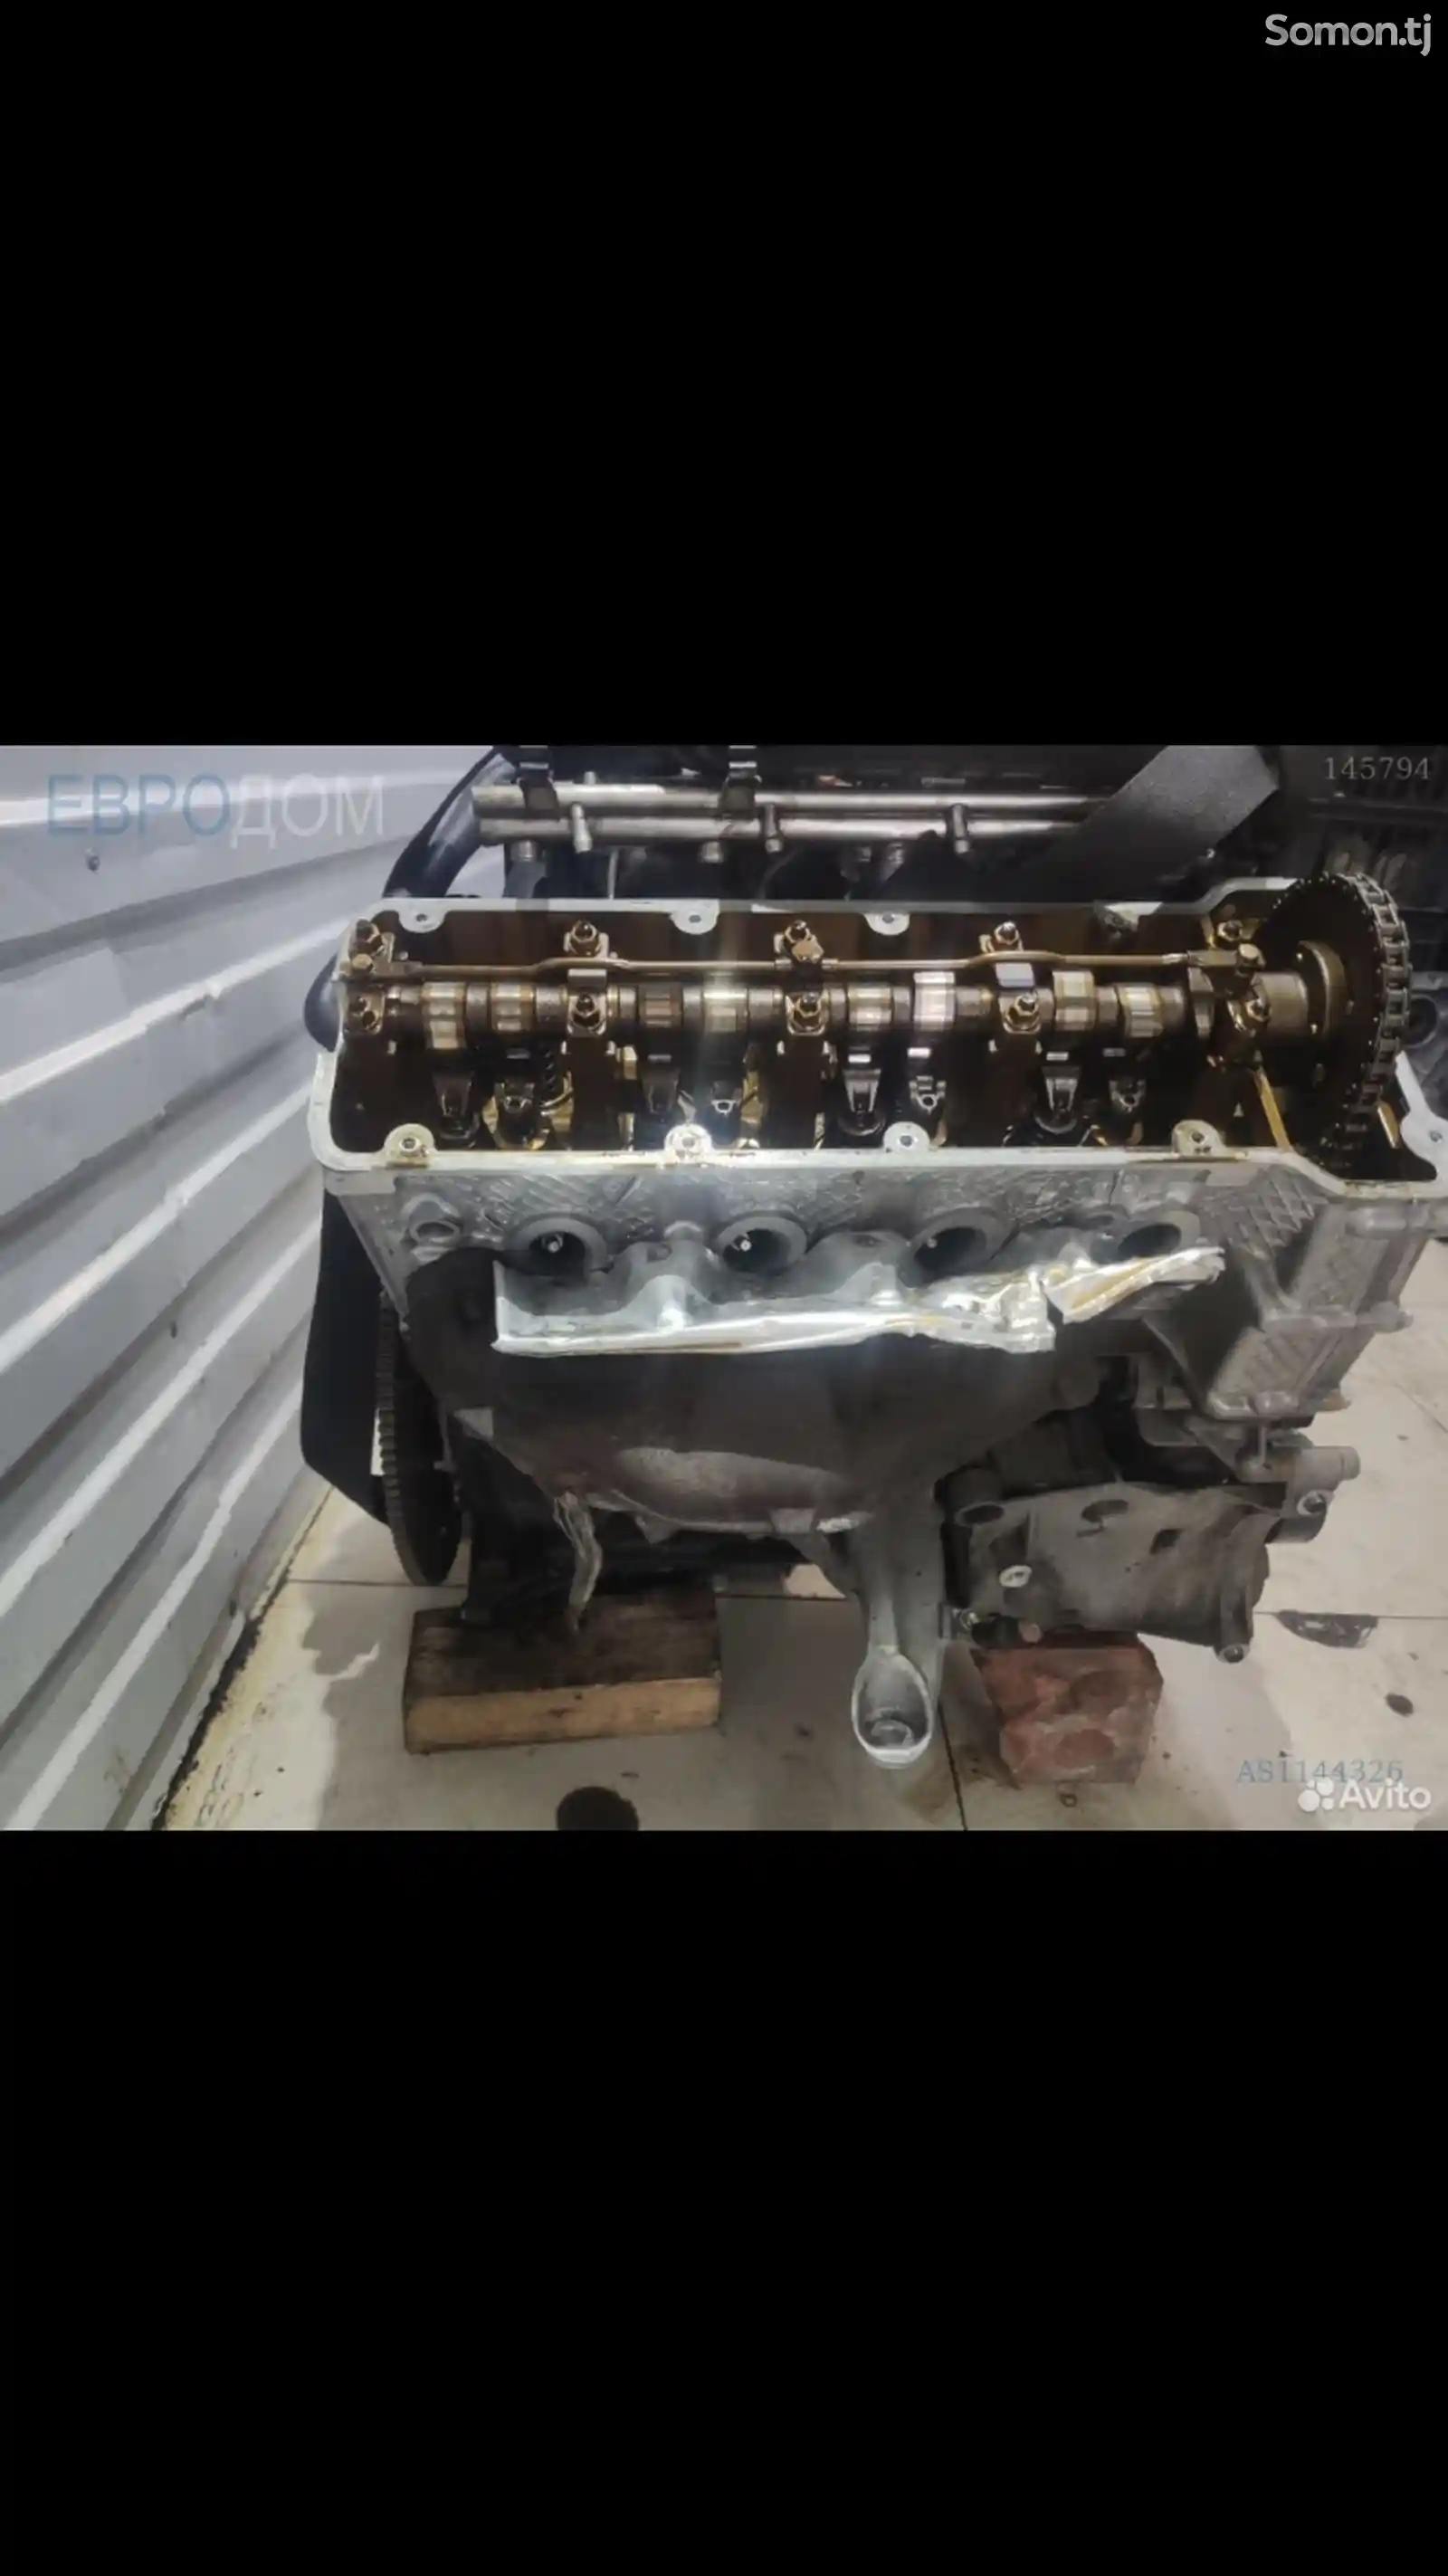 Мотор от BMW/ е46-3